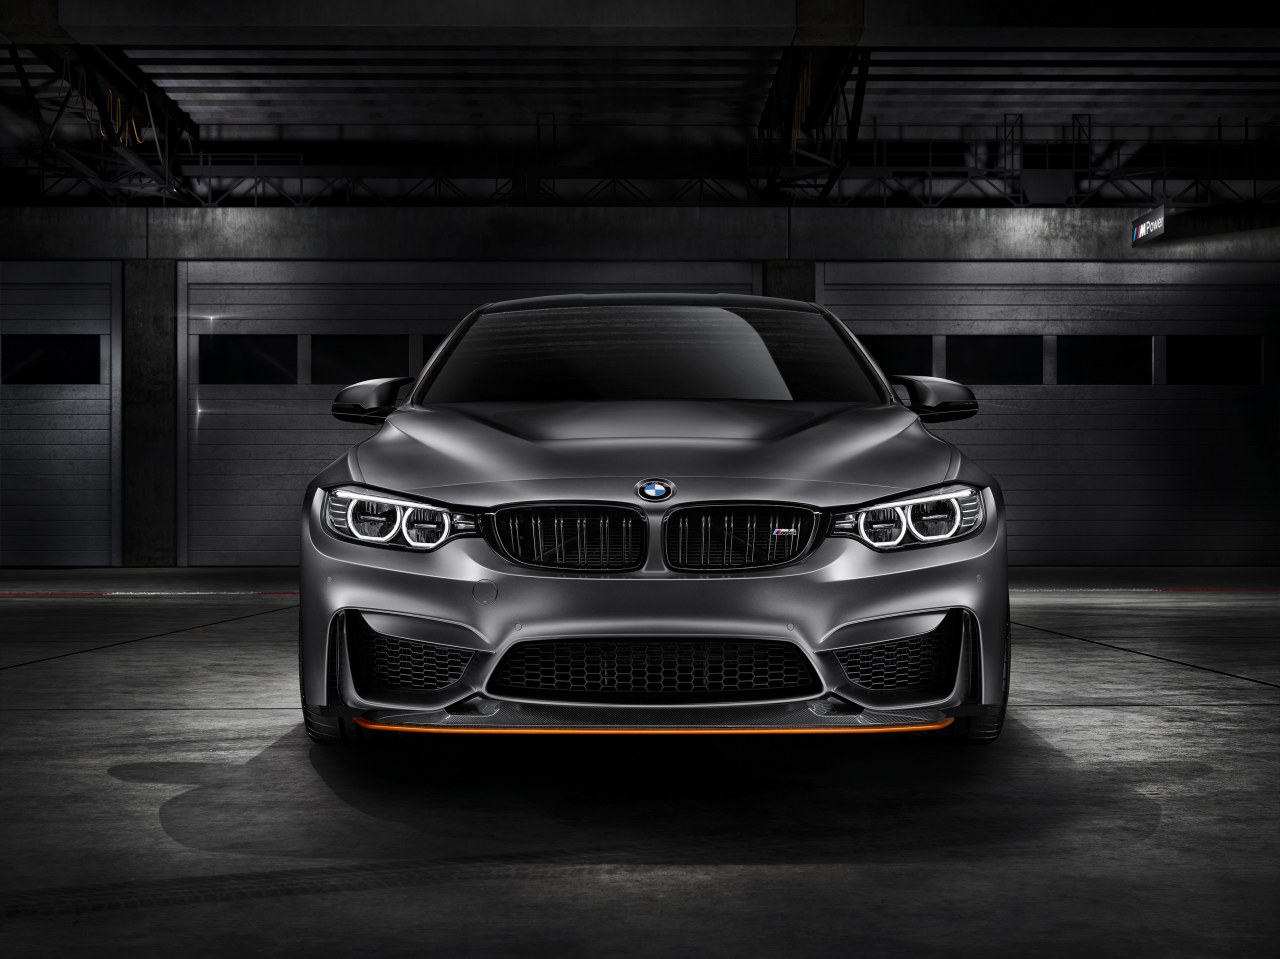 Maak kennis met de BMW M4 GTS Concept